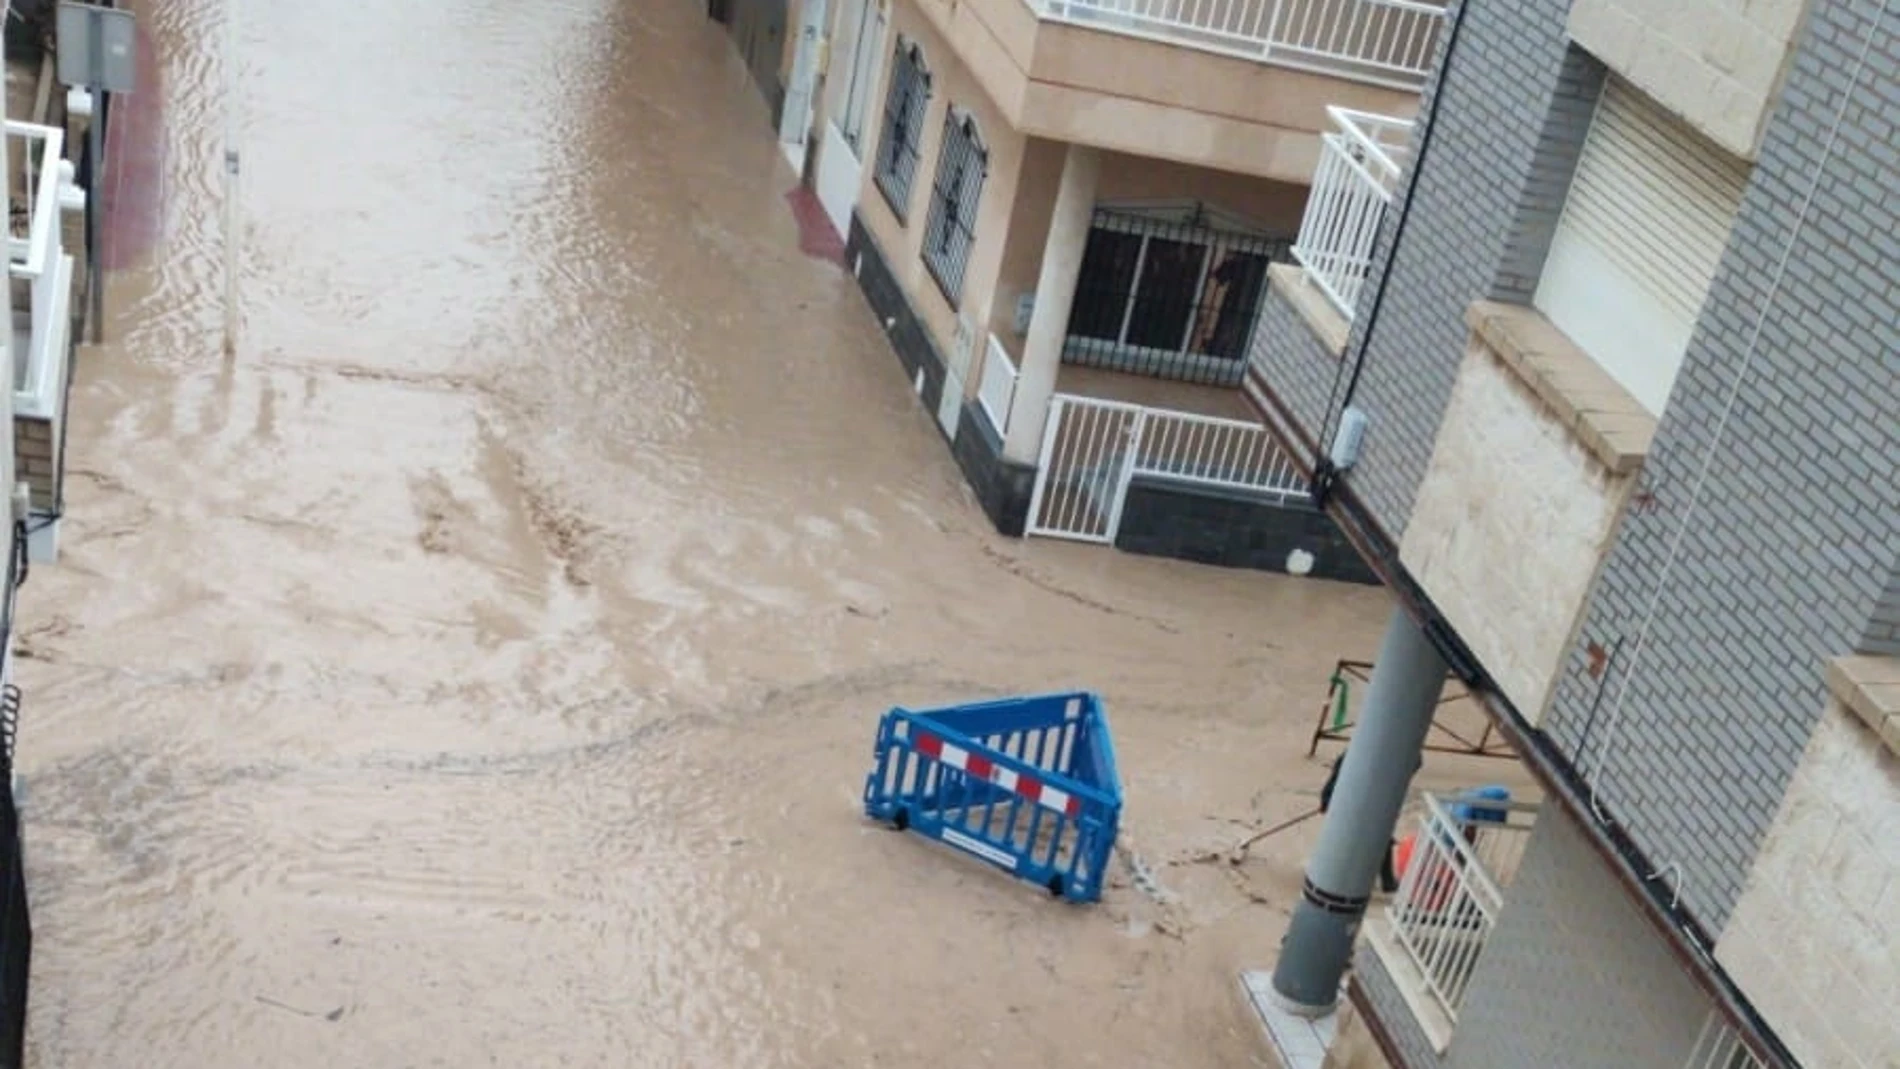 Lluvia, calzada inundada en Los AlcázaresAYUNTAMIENTO DE LOS ALCÁZARES21/01/2020